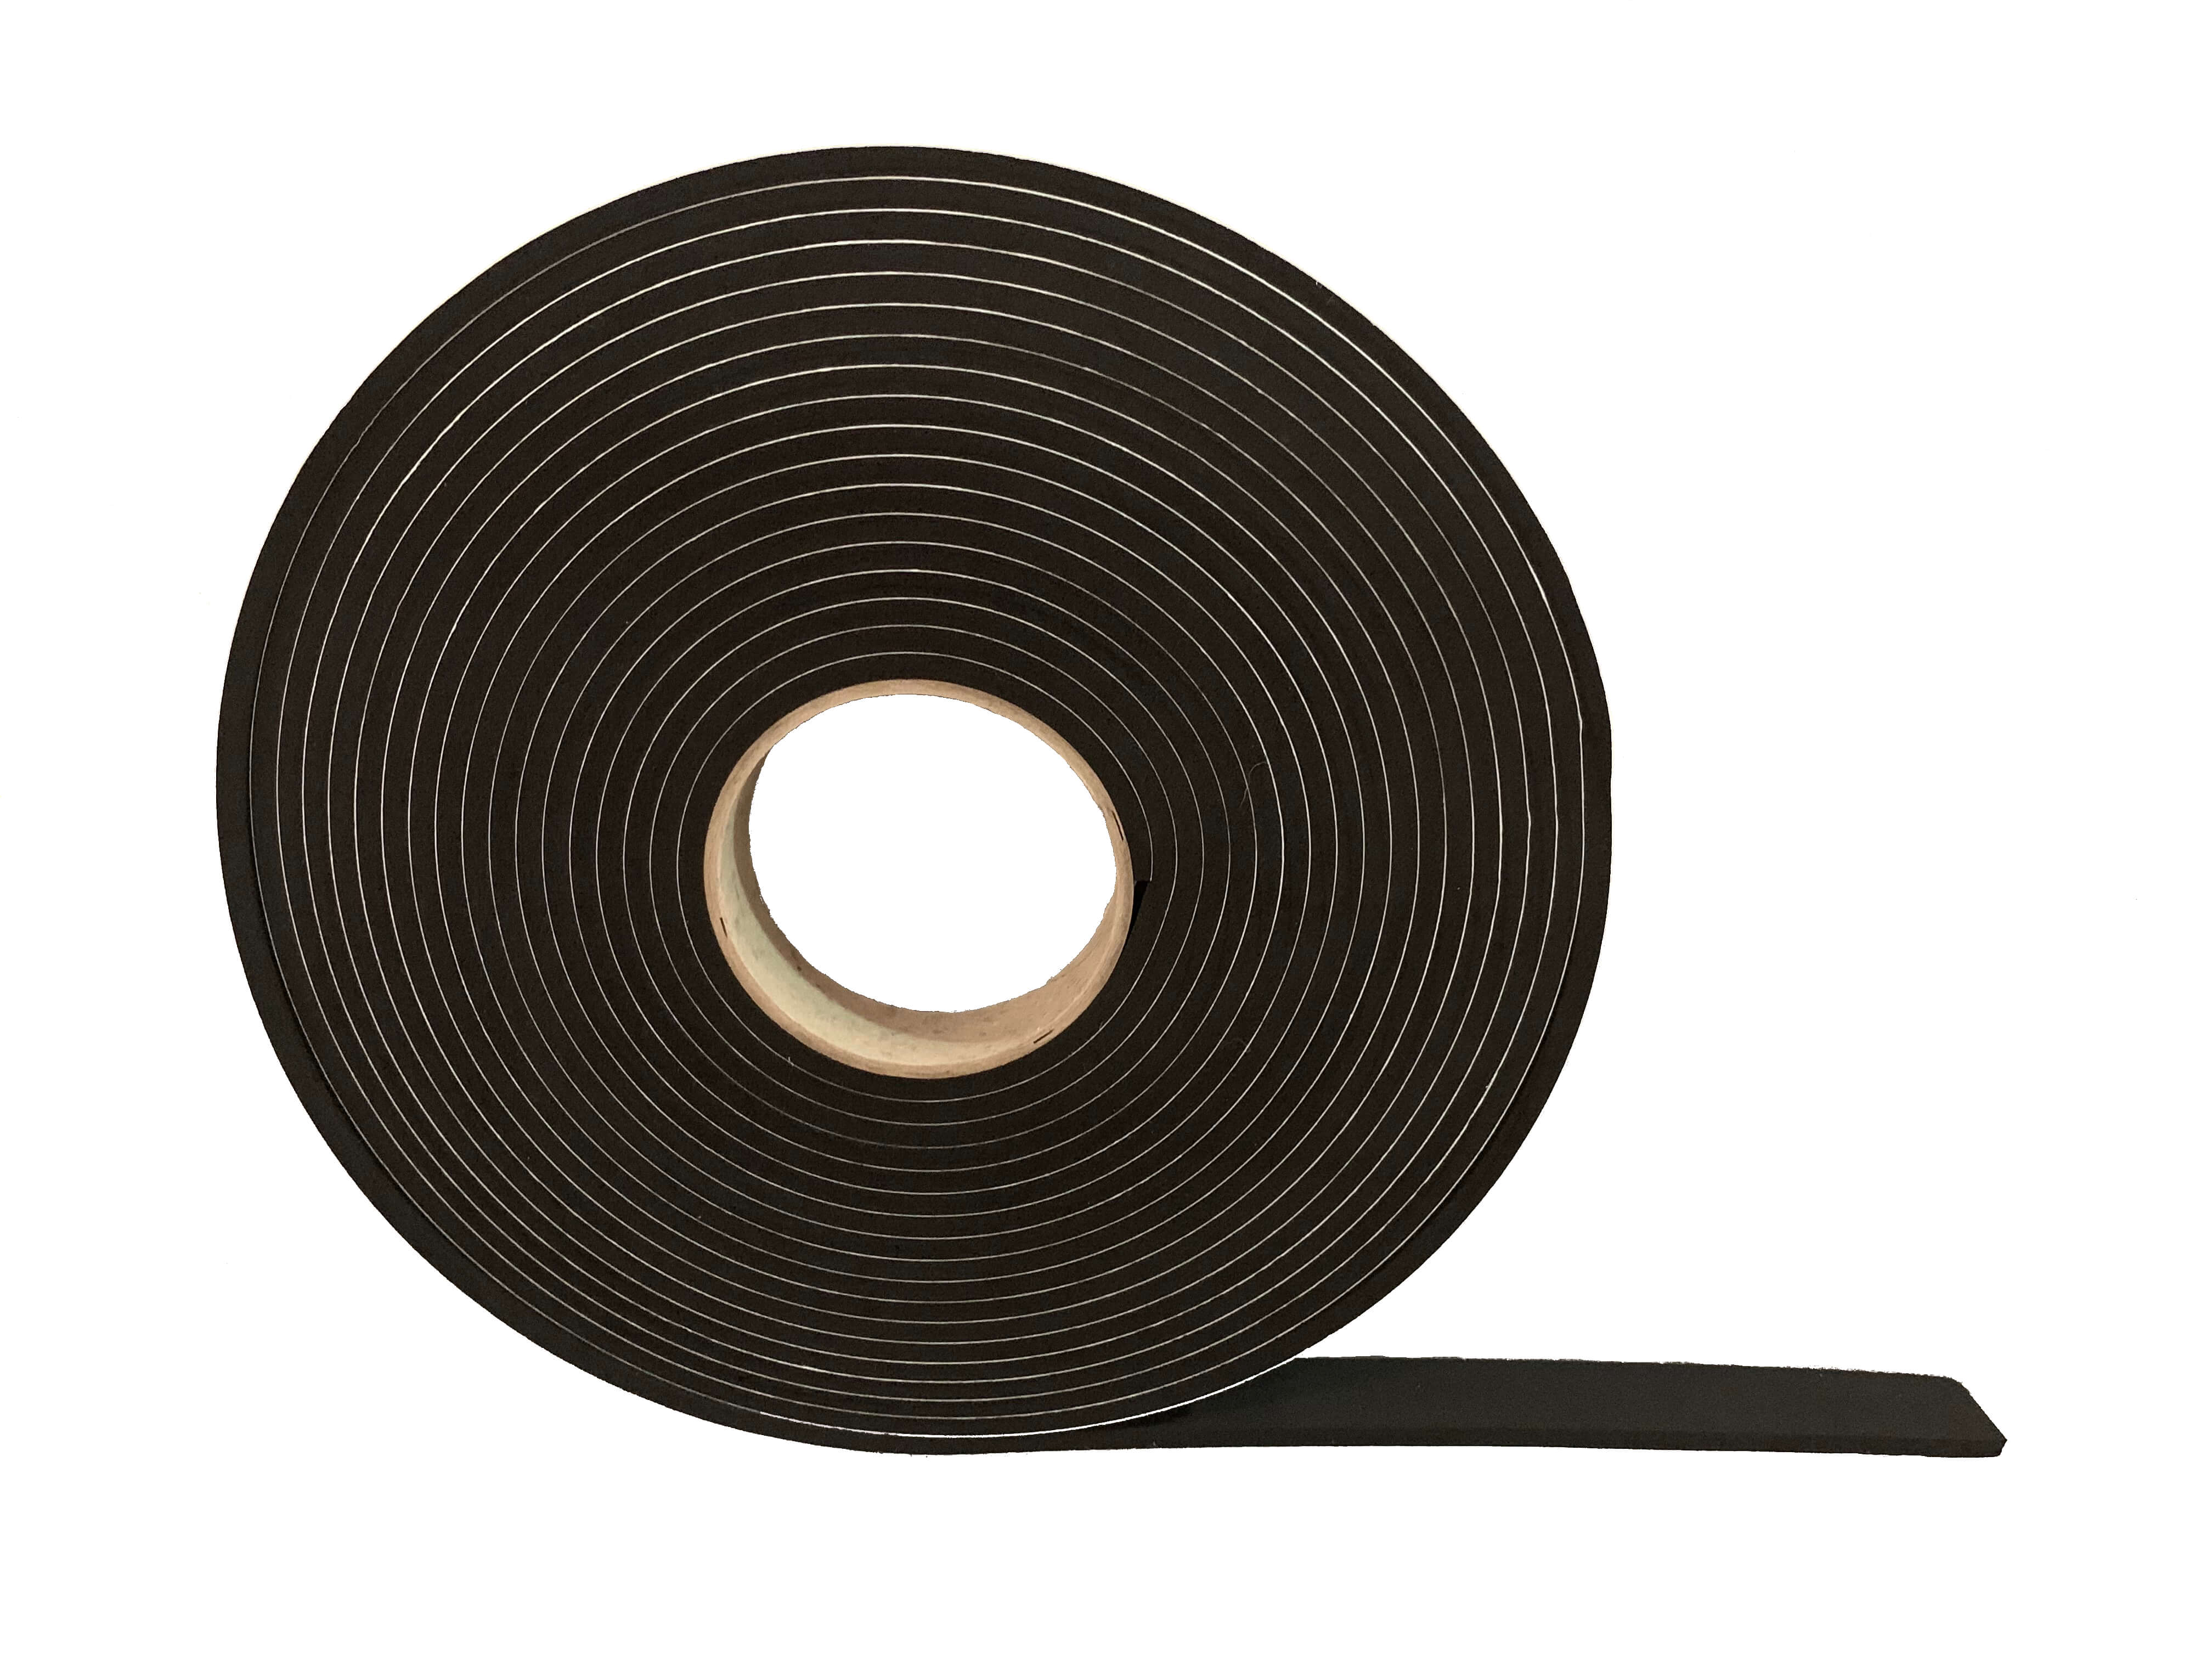 Widerstandsfähiges Dichtungsband – 5 mm dick x 25 mm breit x 10 m lang